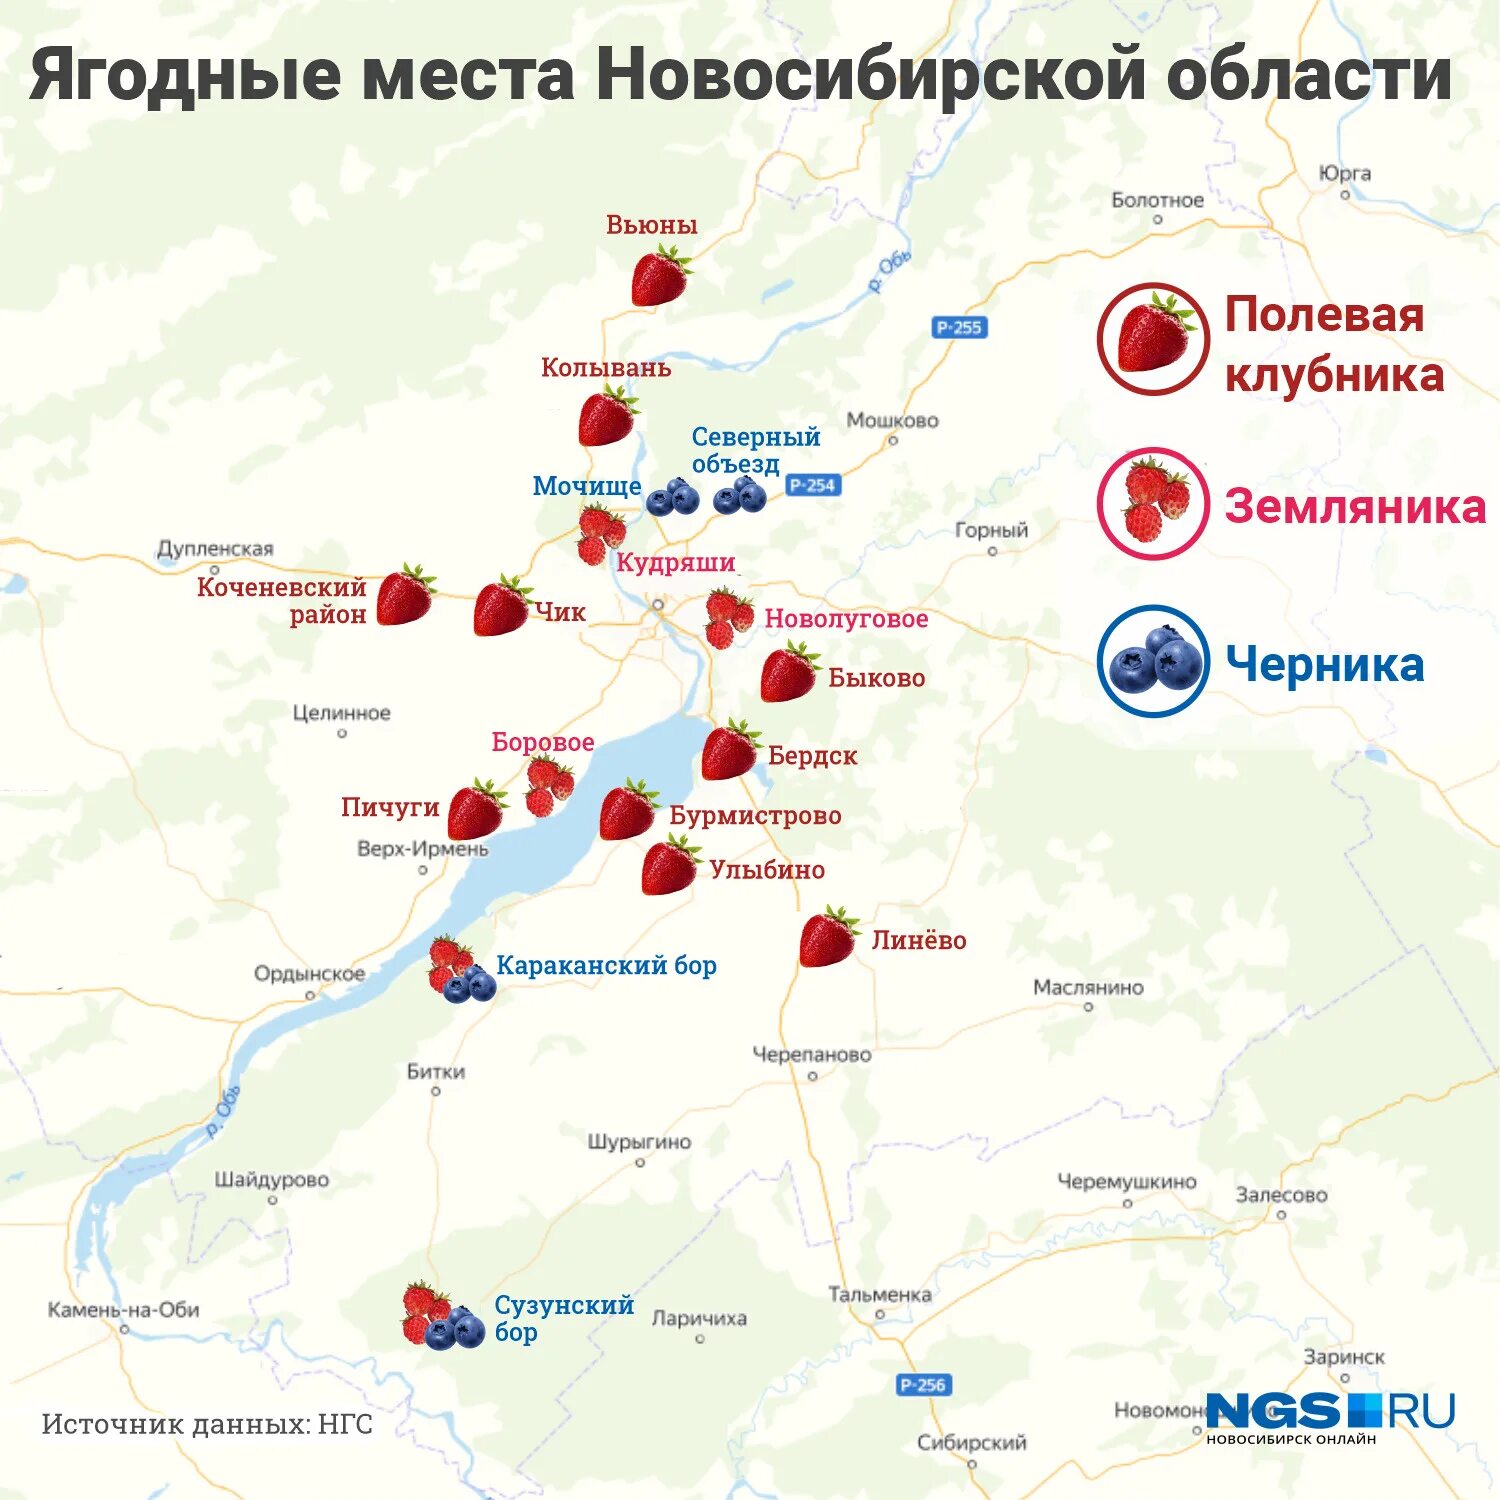 Где в подмосковье собирают. Ягодные места в Новосибирске. Карта ягодных мест Новосибирской области. Ягодные места в Новосибирске на карте. Карта черничных мест.